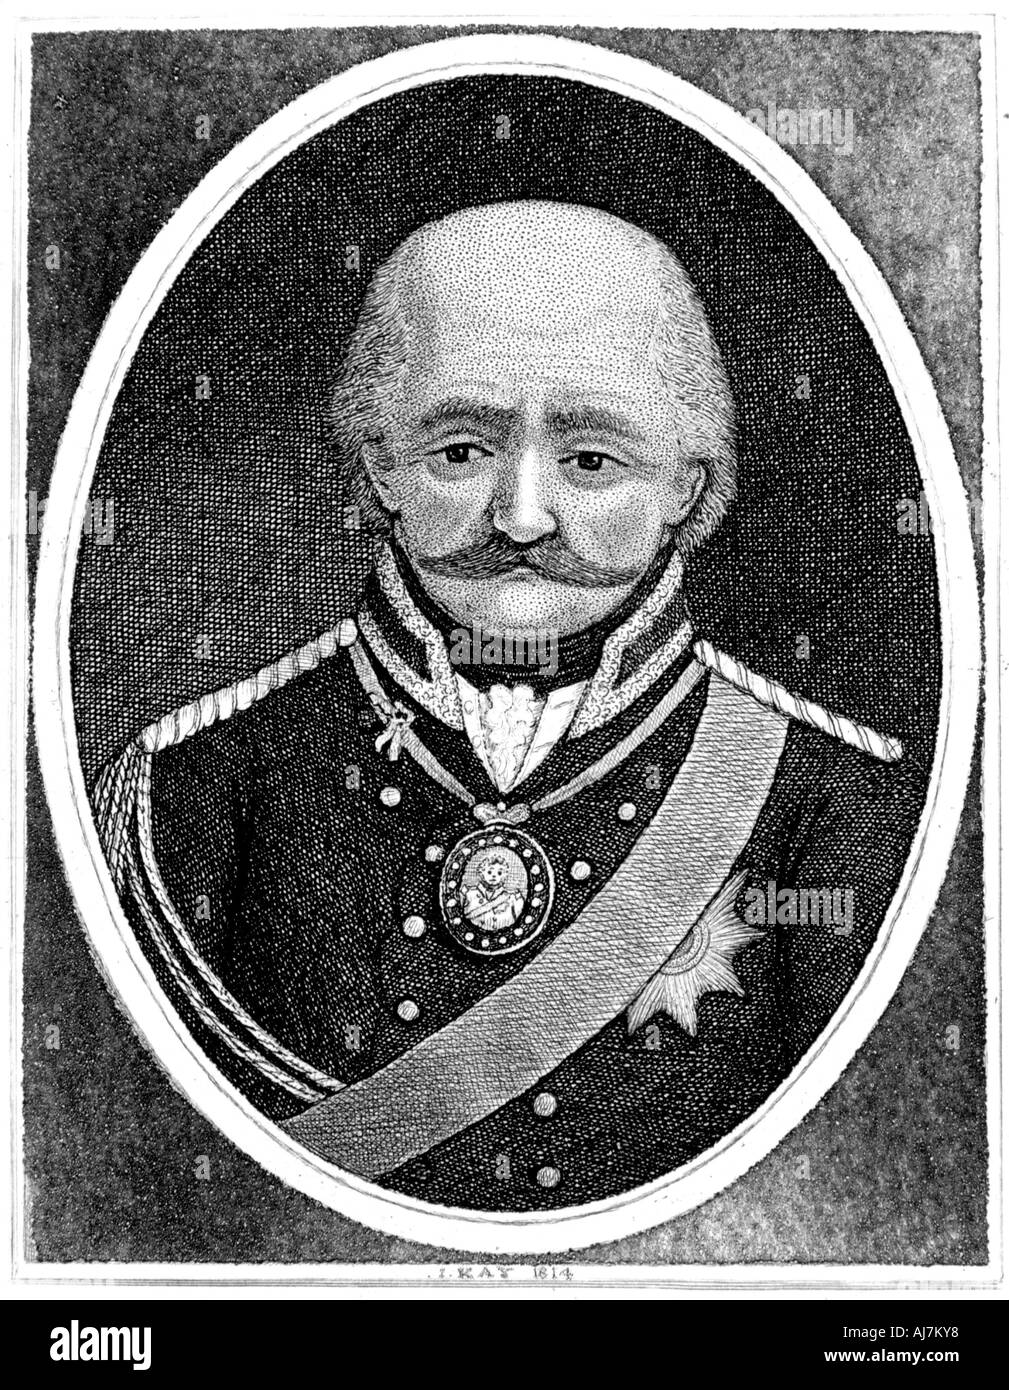 Gebhard Leberecht von Blucher, Prussian general, 1814. Artist: John Kay Stock Photo